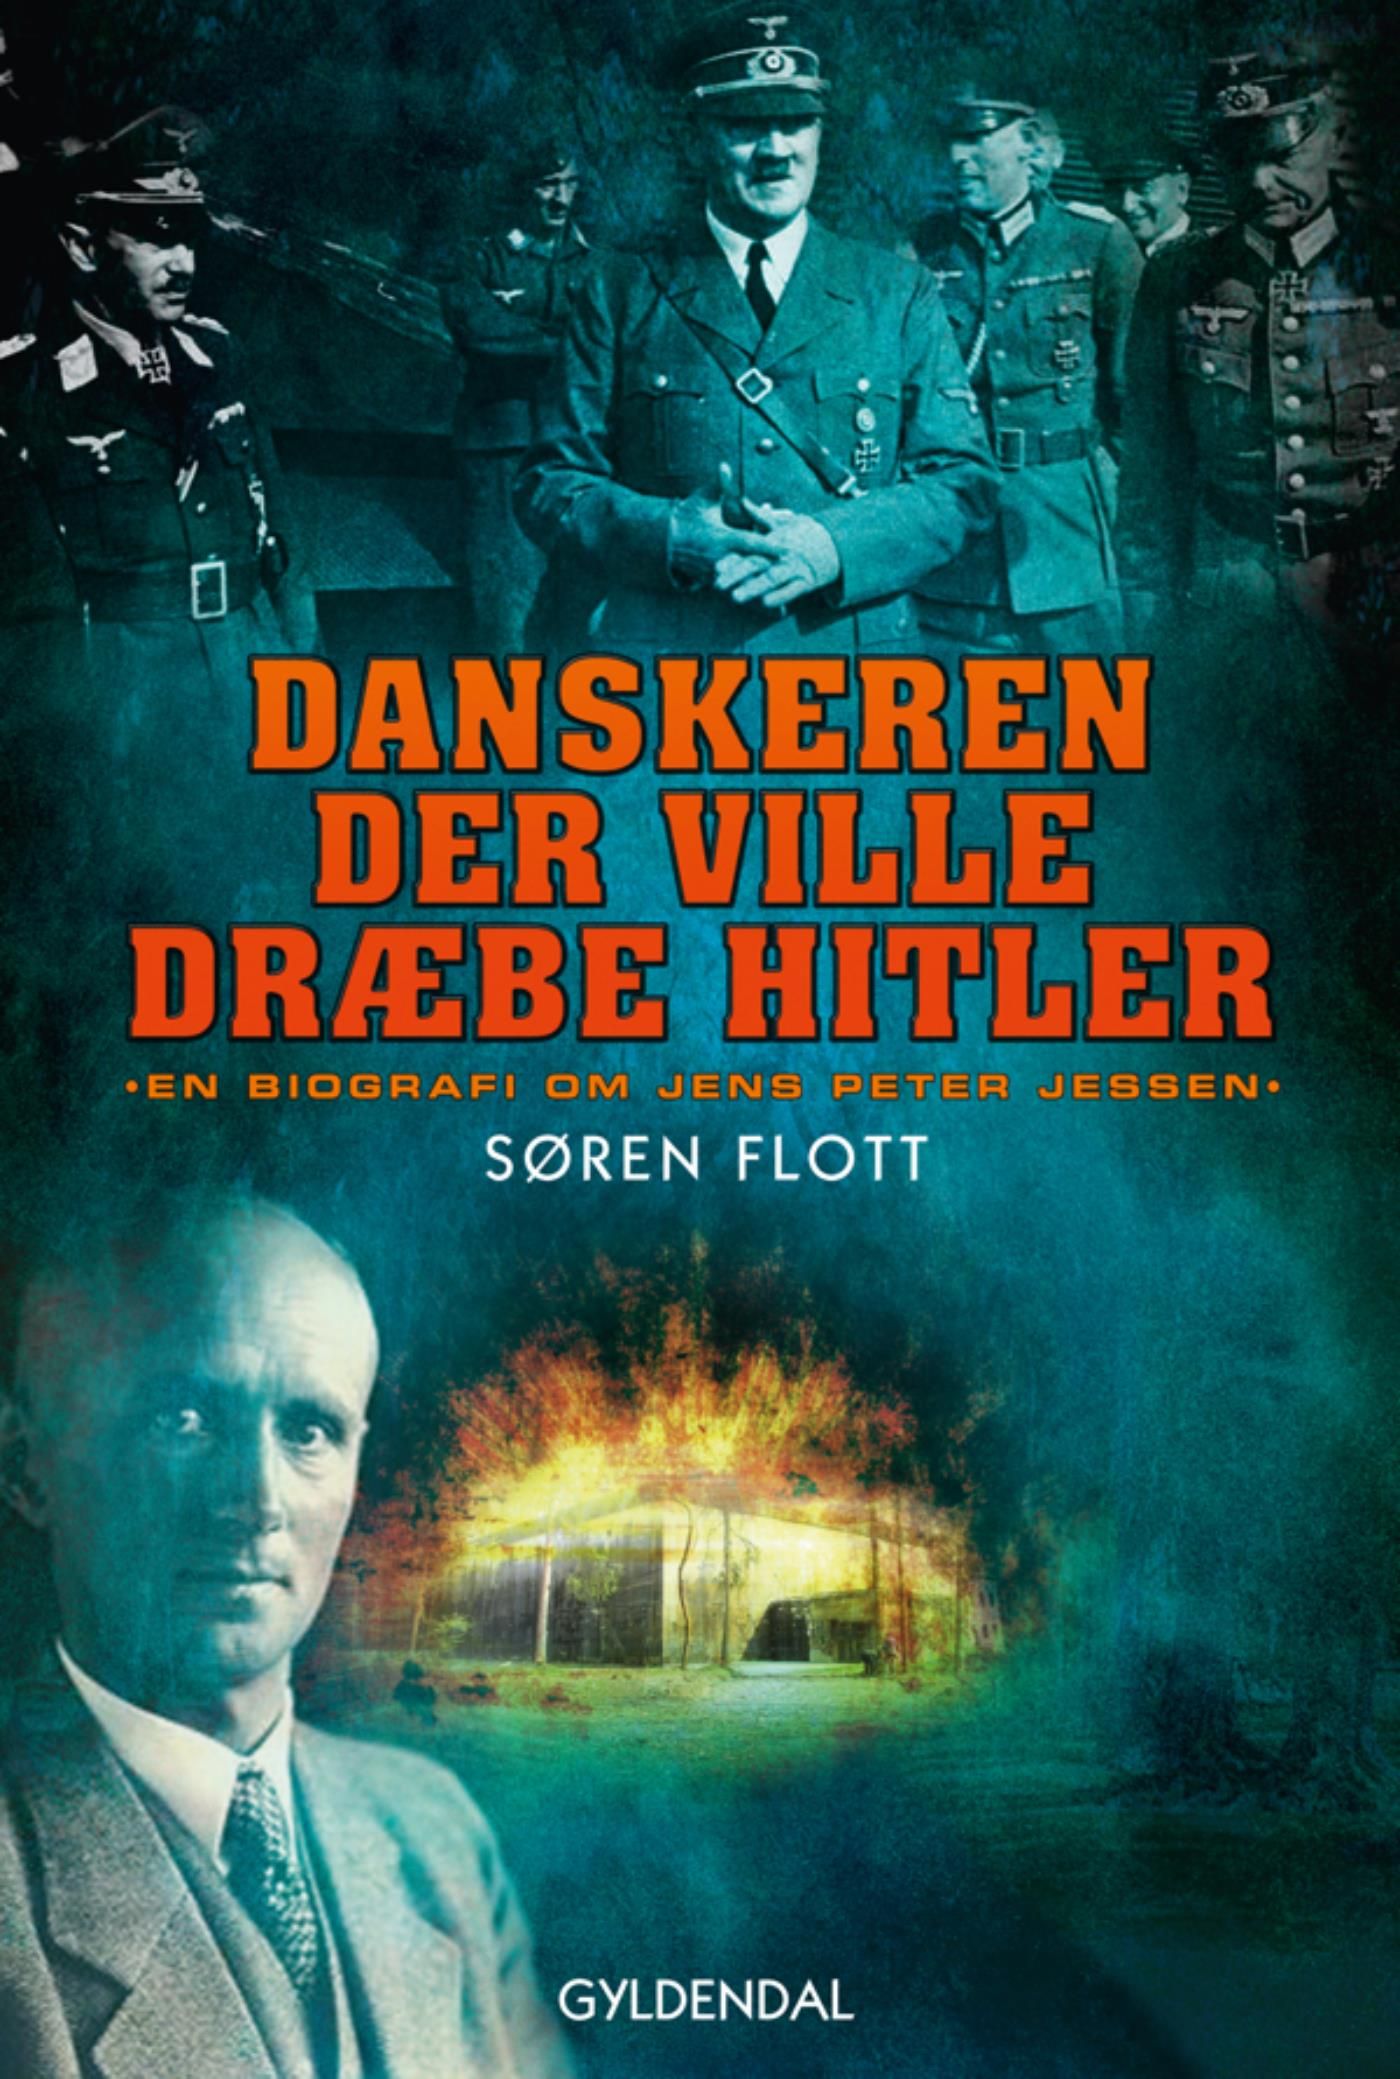 Danskeren der ville dræbe Hitler, e-bok av Søren Flott